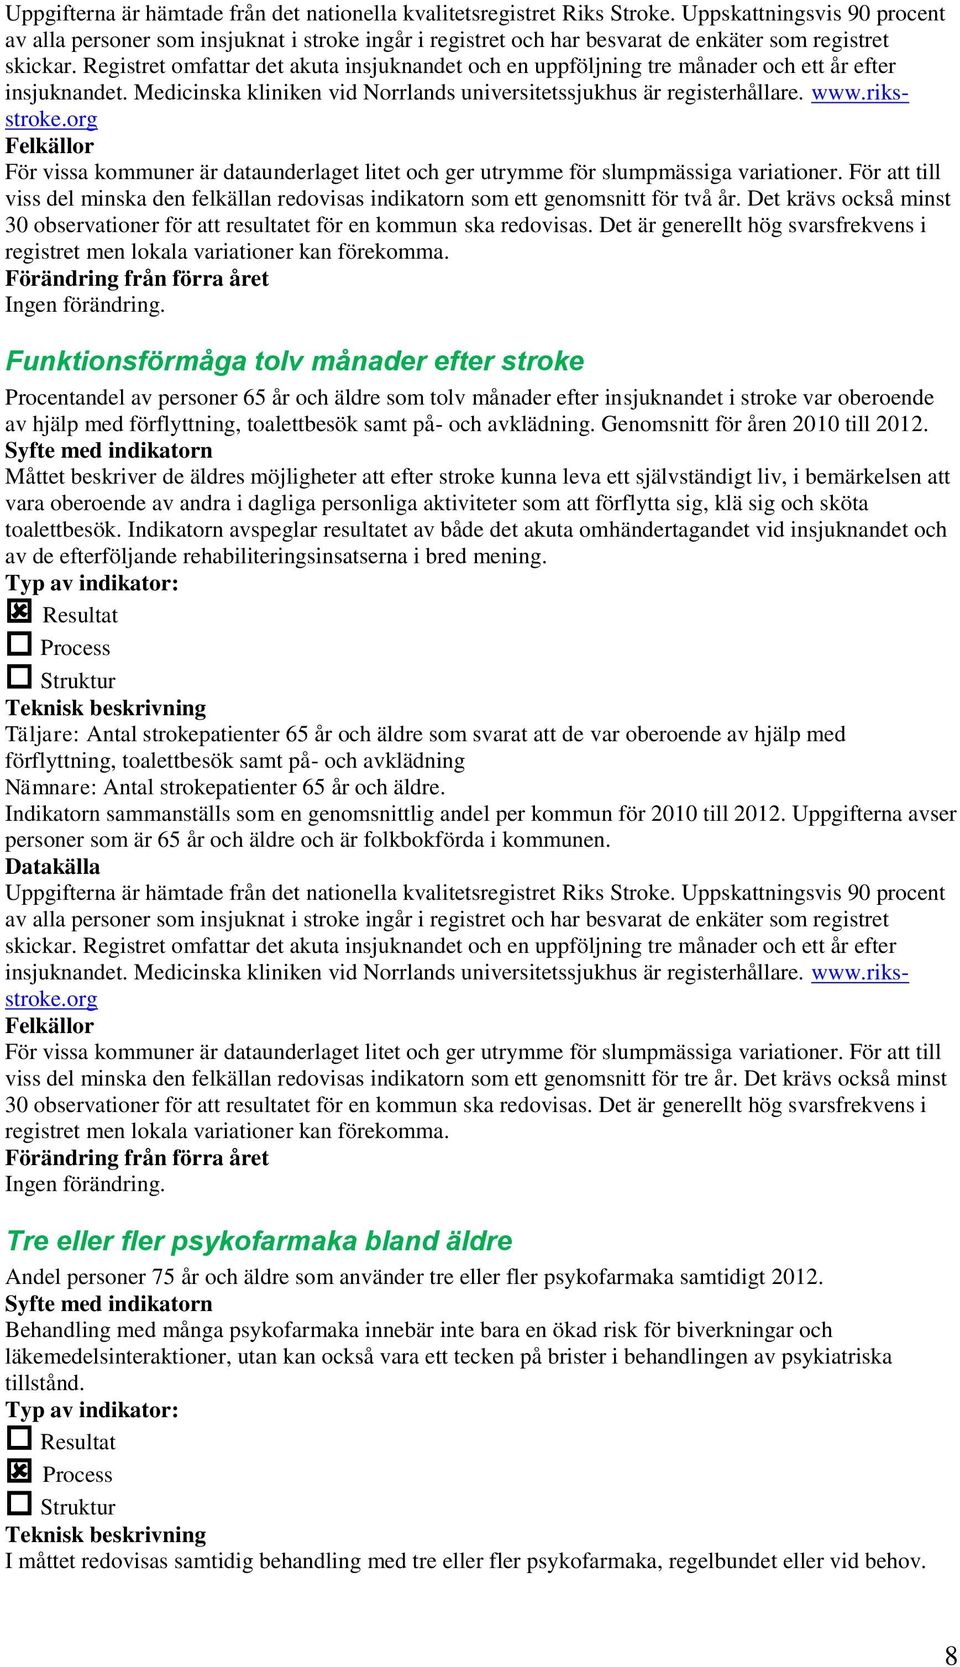 Registret omfattar det akuta insjuknandet och en uppföljning tre månader och ett år efter insjuknandet. Medicinska kliniken vid Norrlands universitetssjukhus är registerhållare. www.riksstroke.